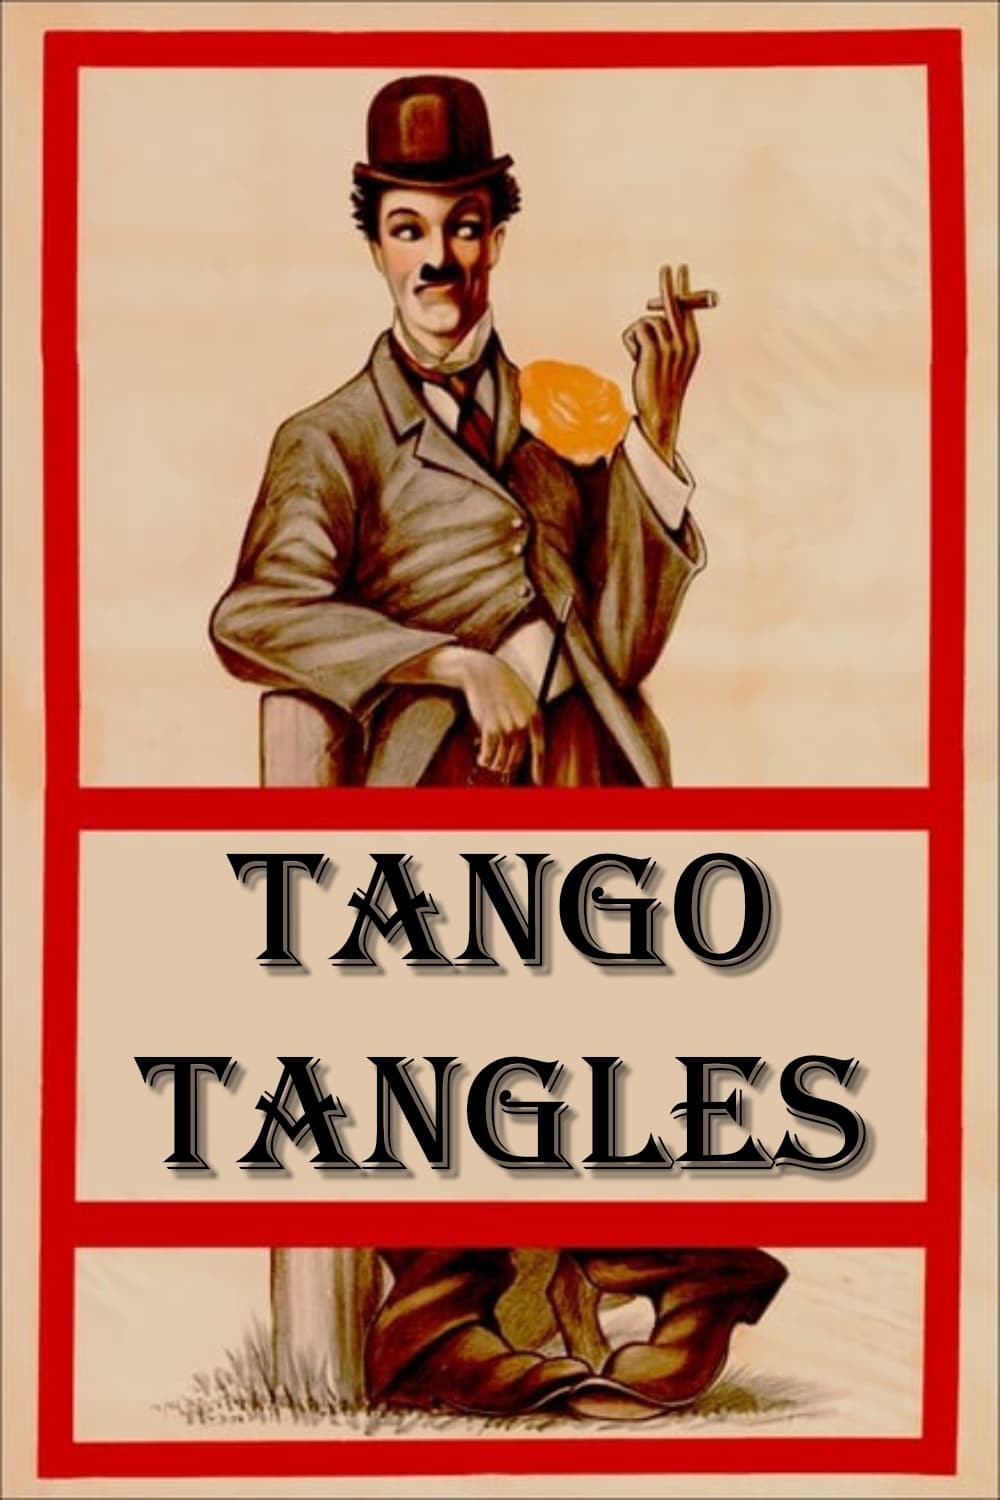 Tango Tangles